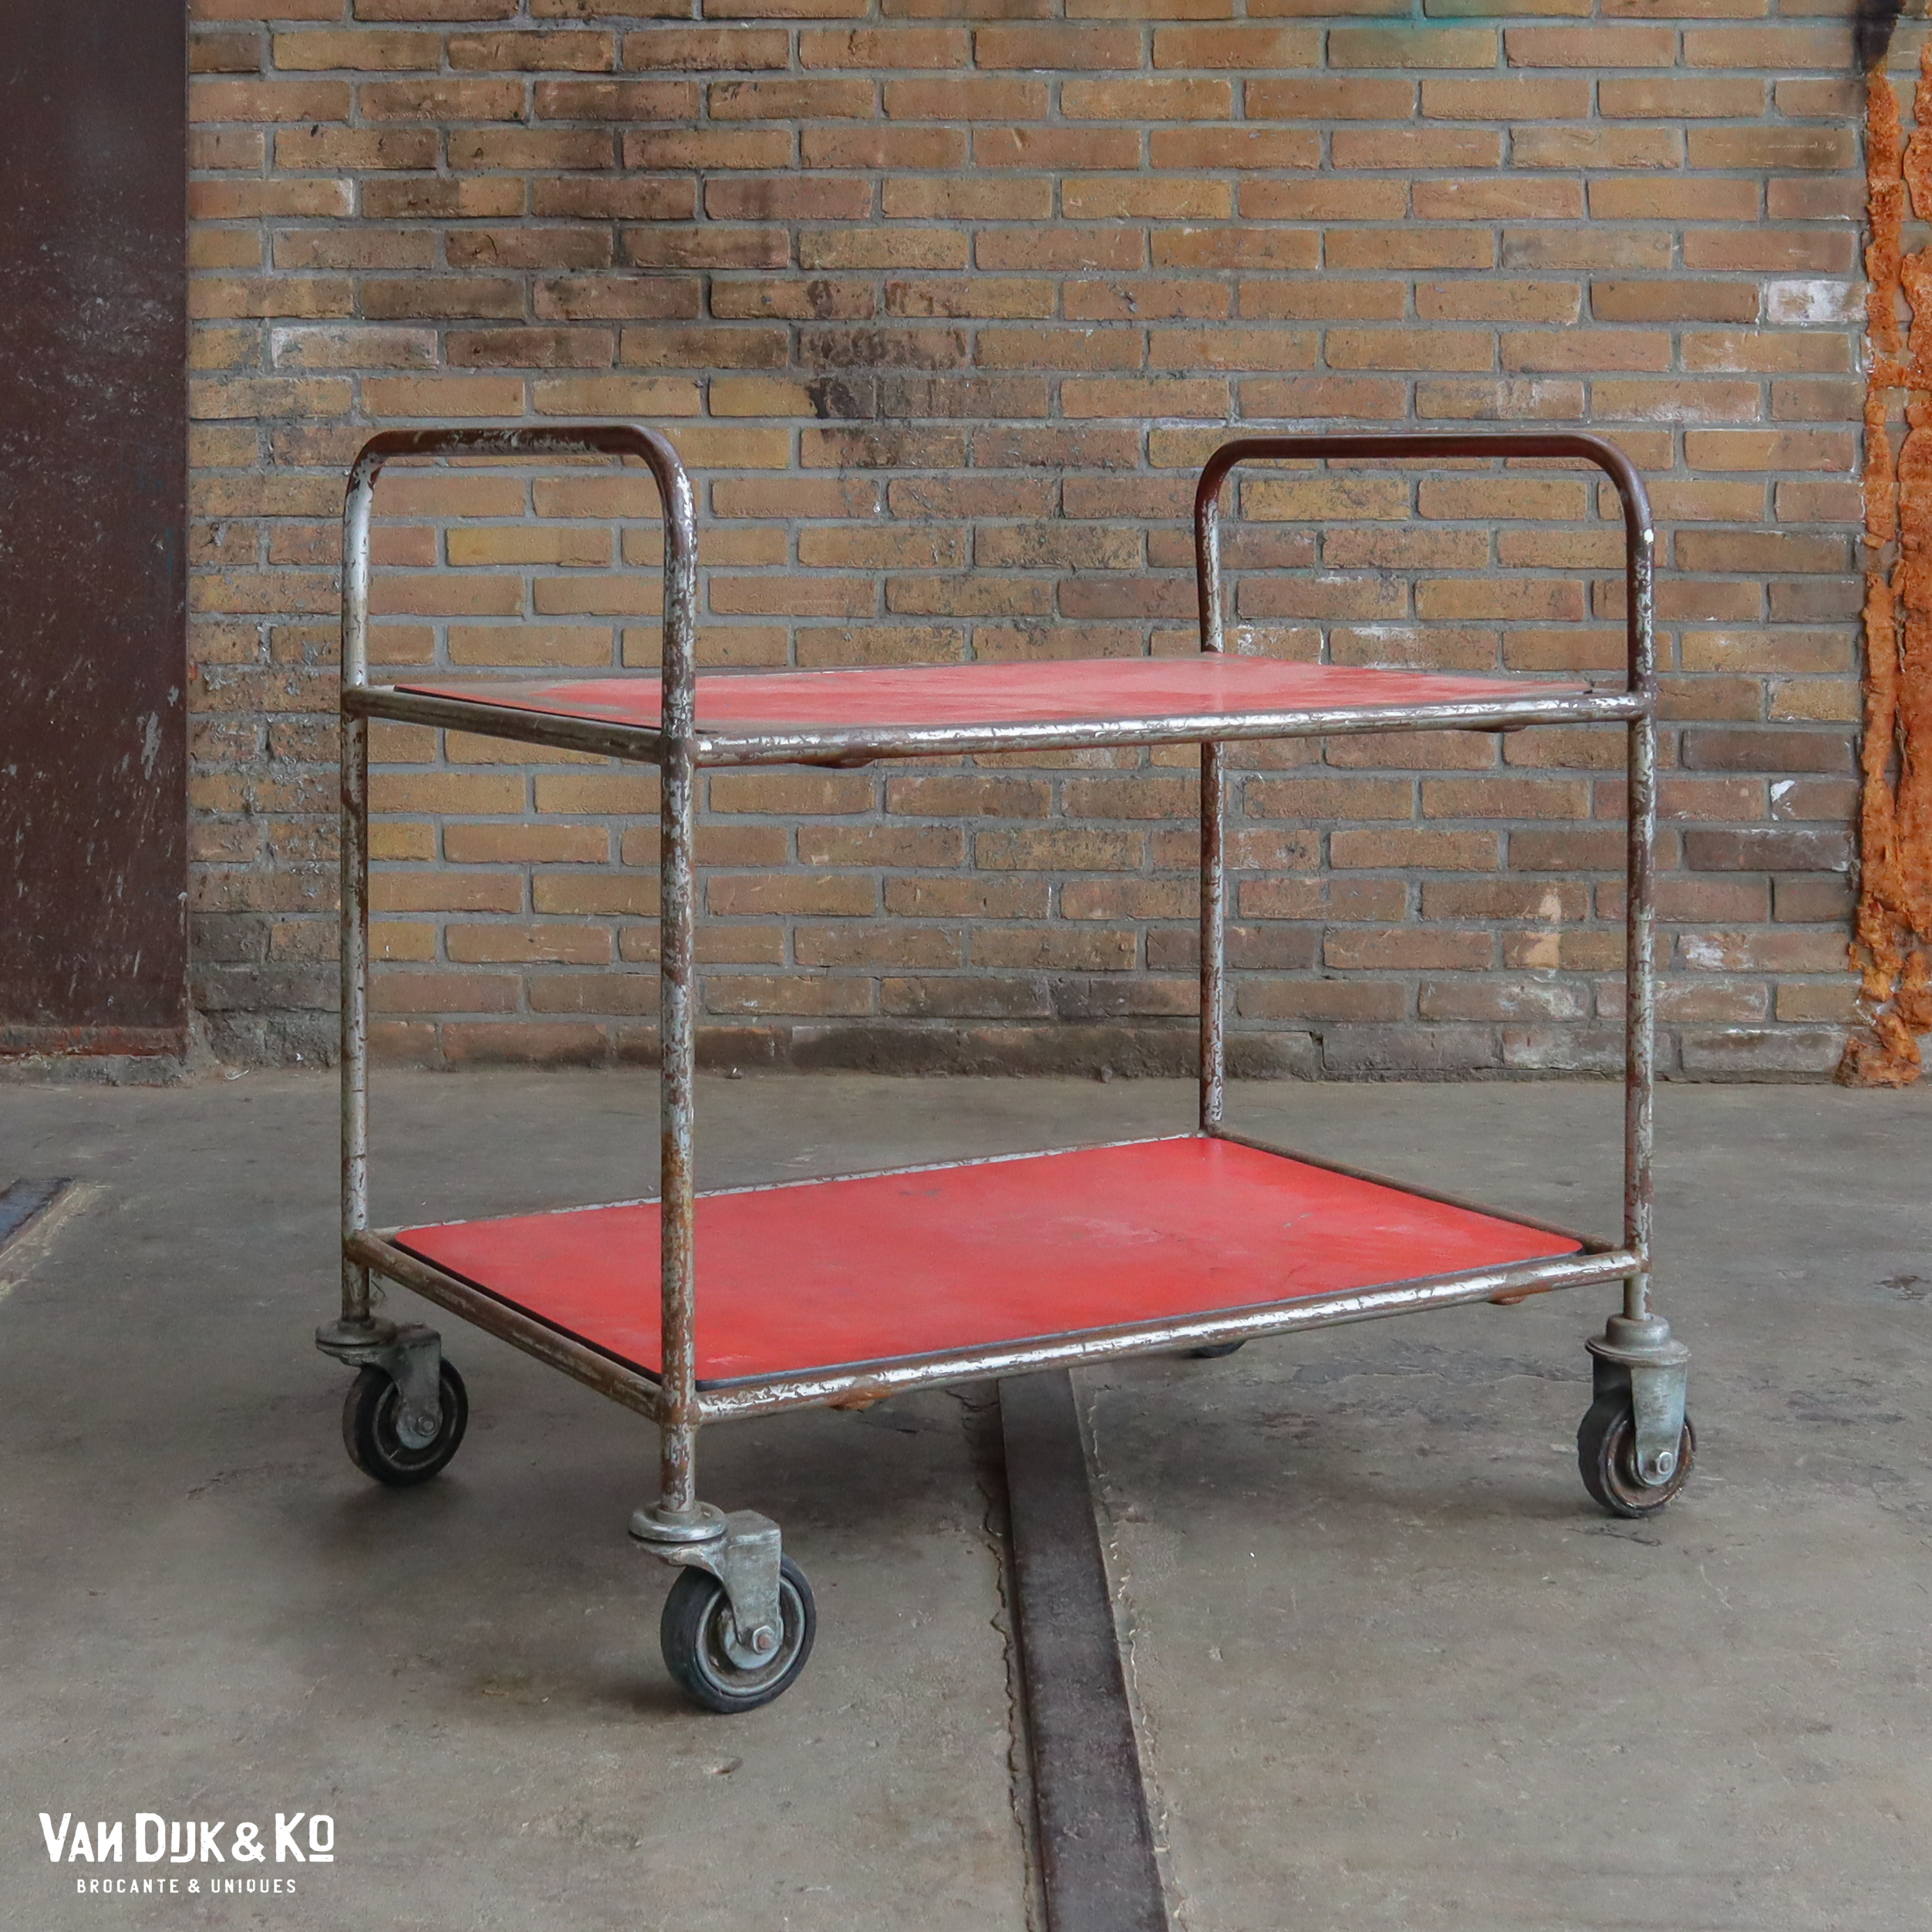 pols Dicht Openlijk Industriële trolley » Van Dijk & Ko